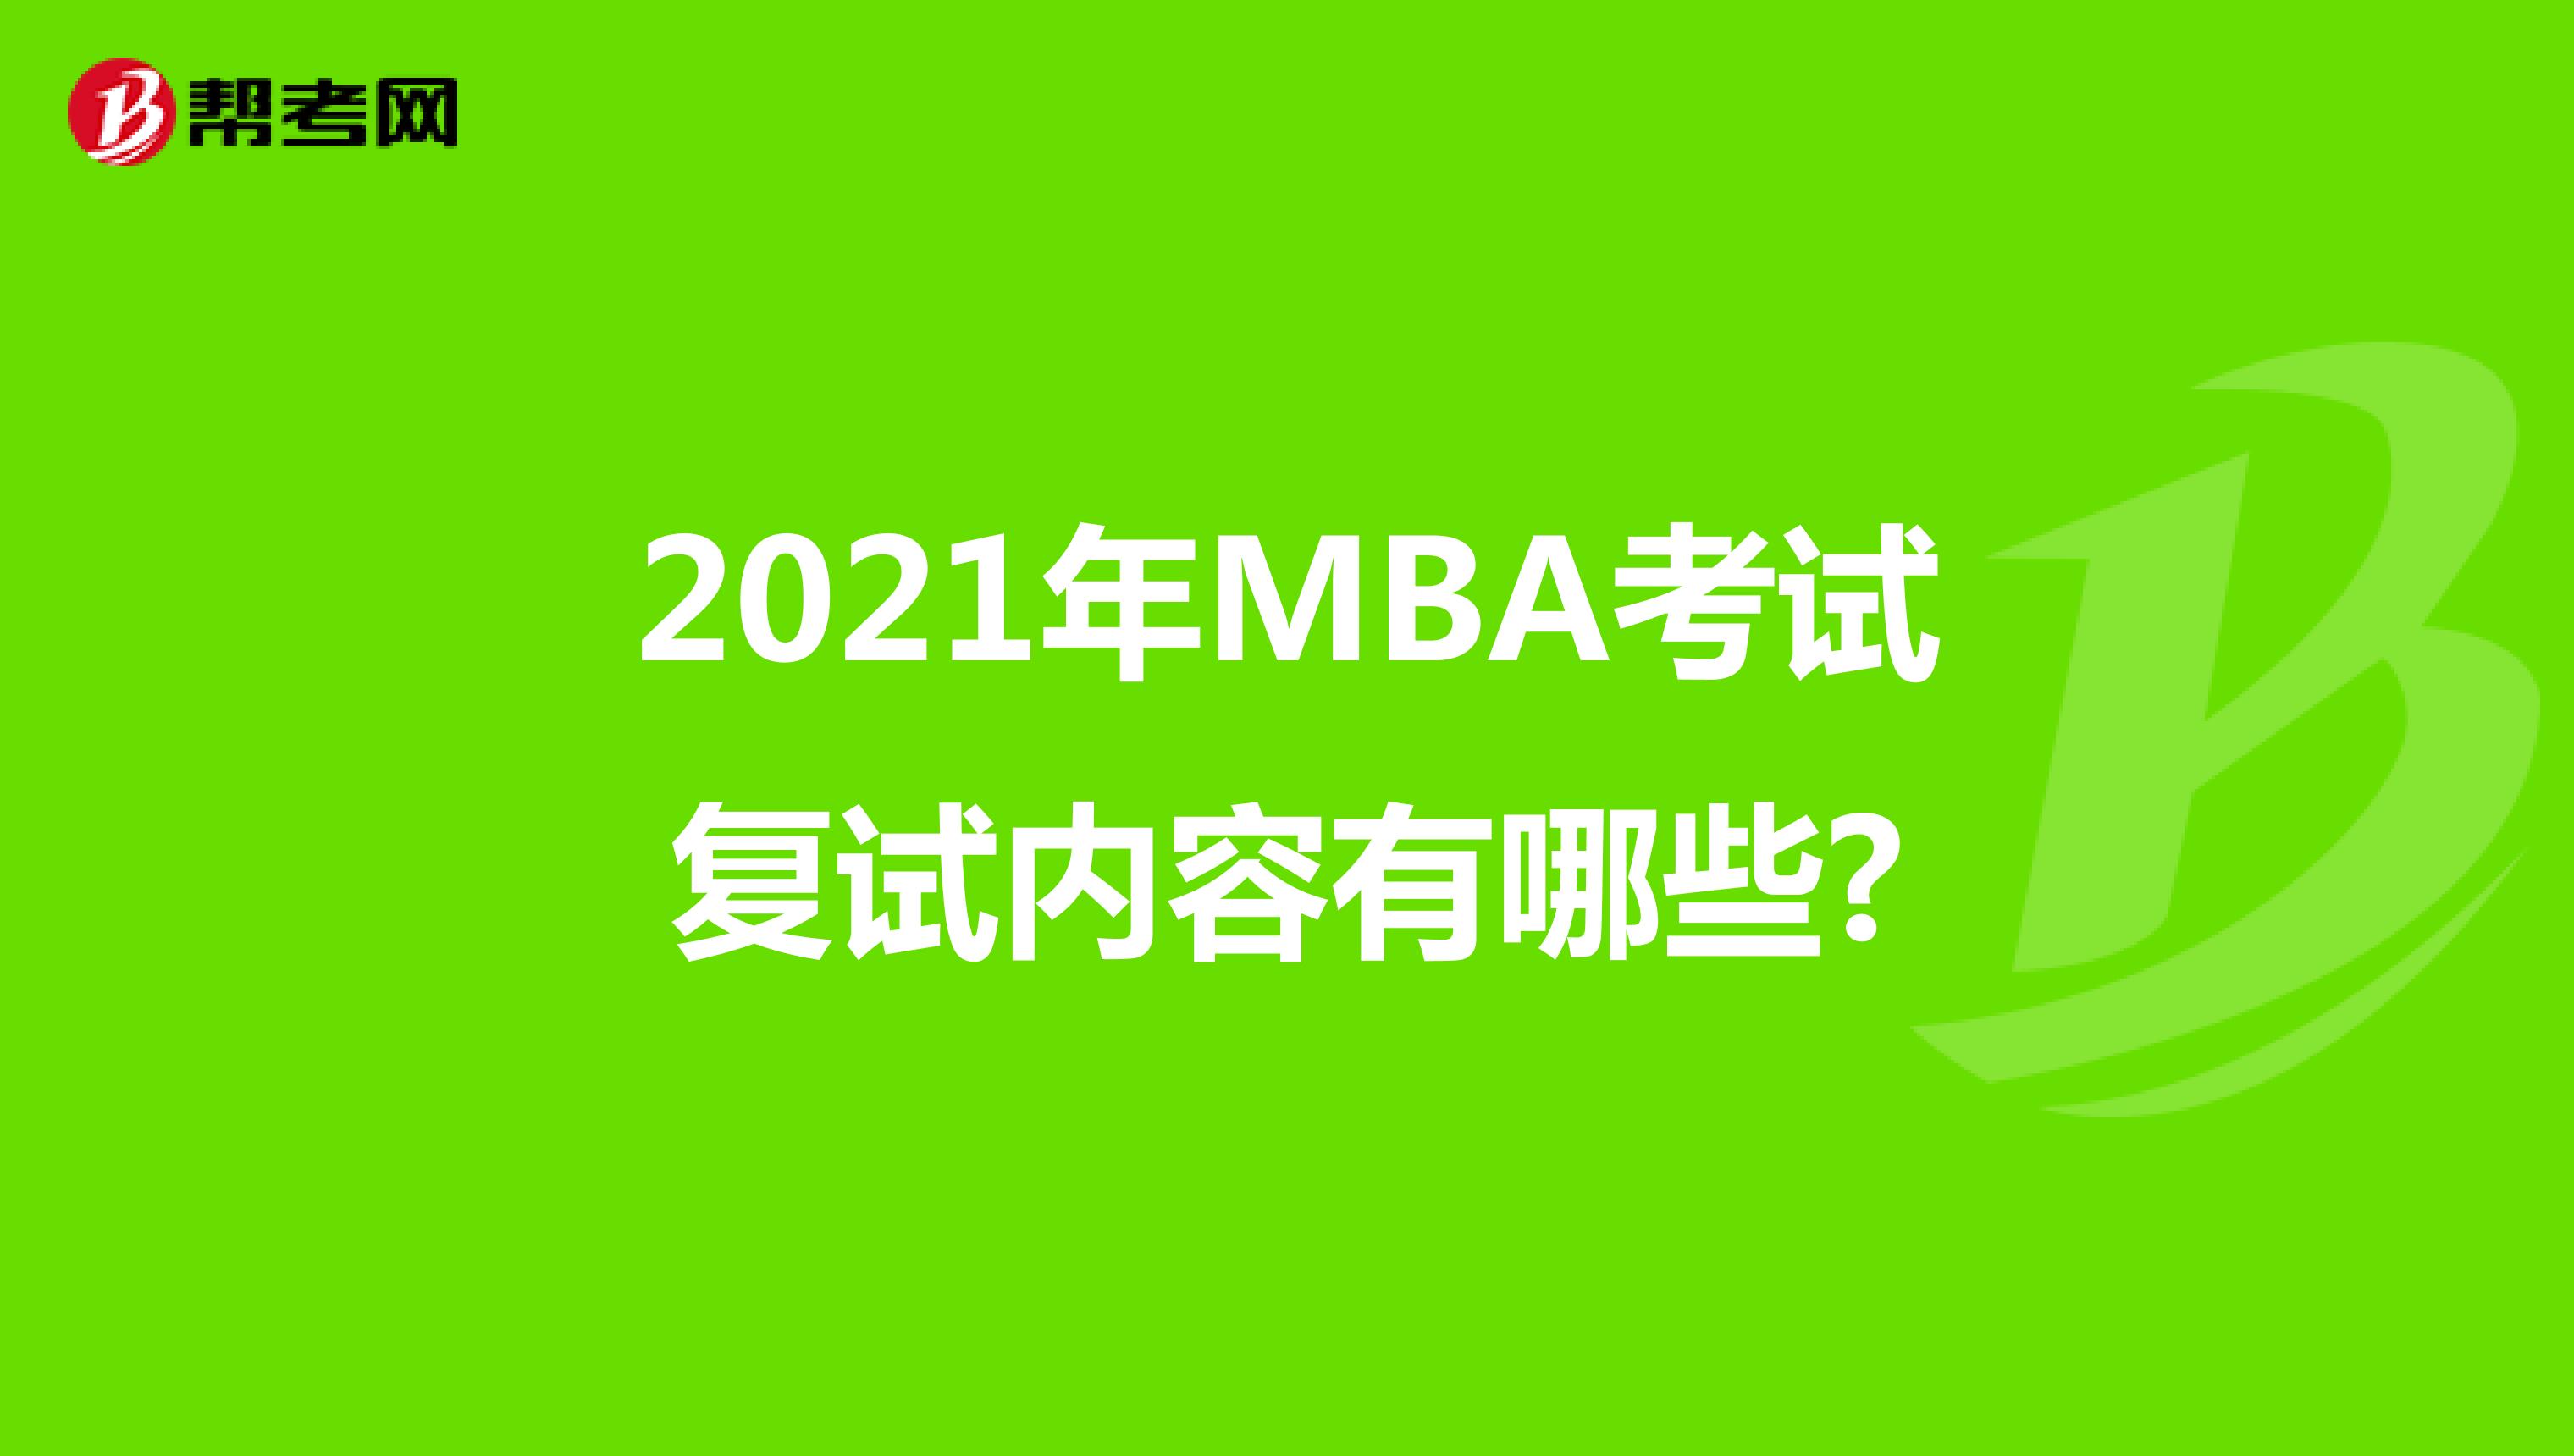 2021年MBA考试复试内容有哪些?